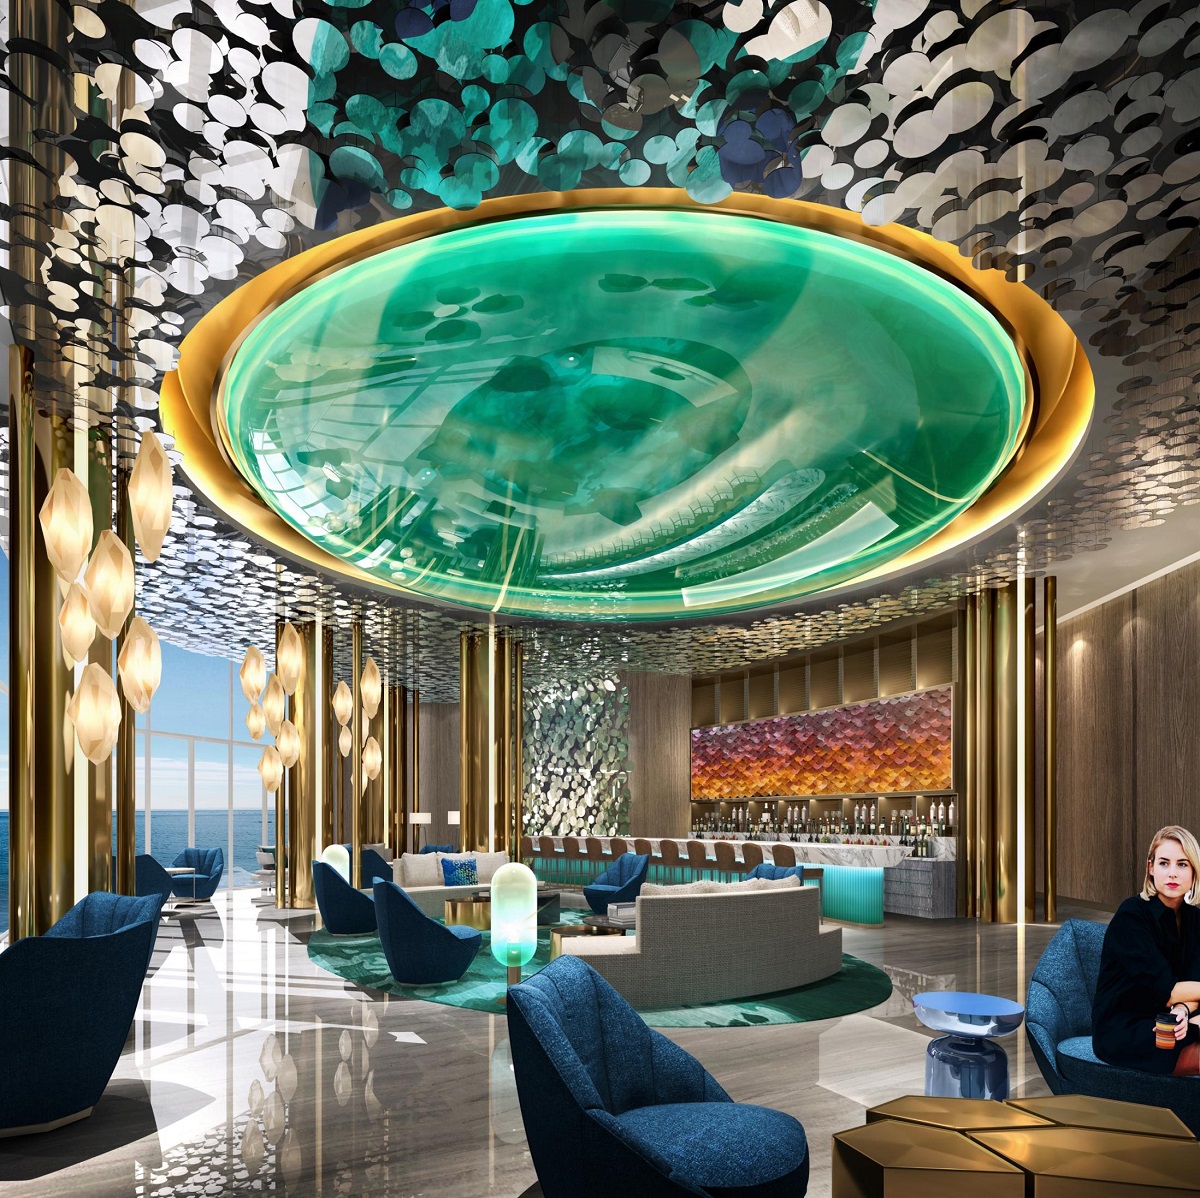 黄金海岸酒店装饰设计效果图